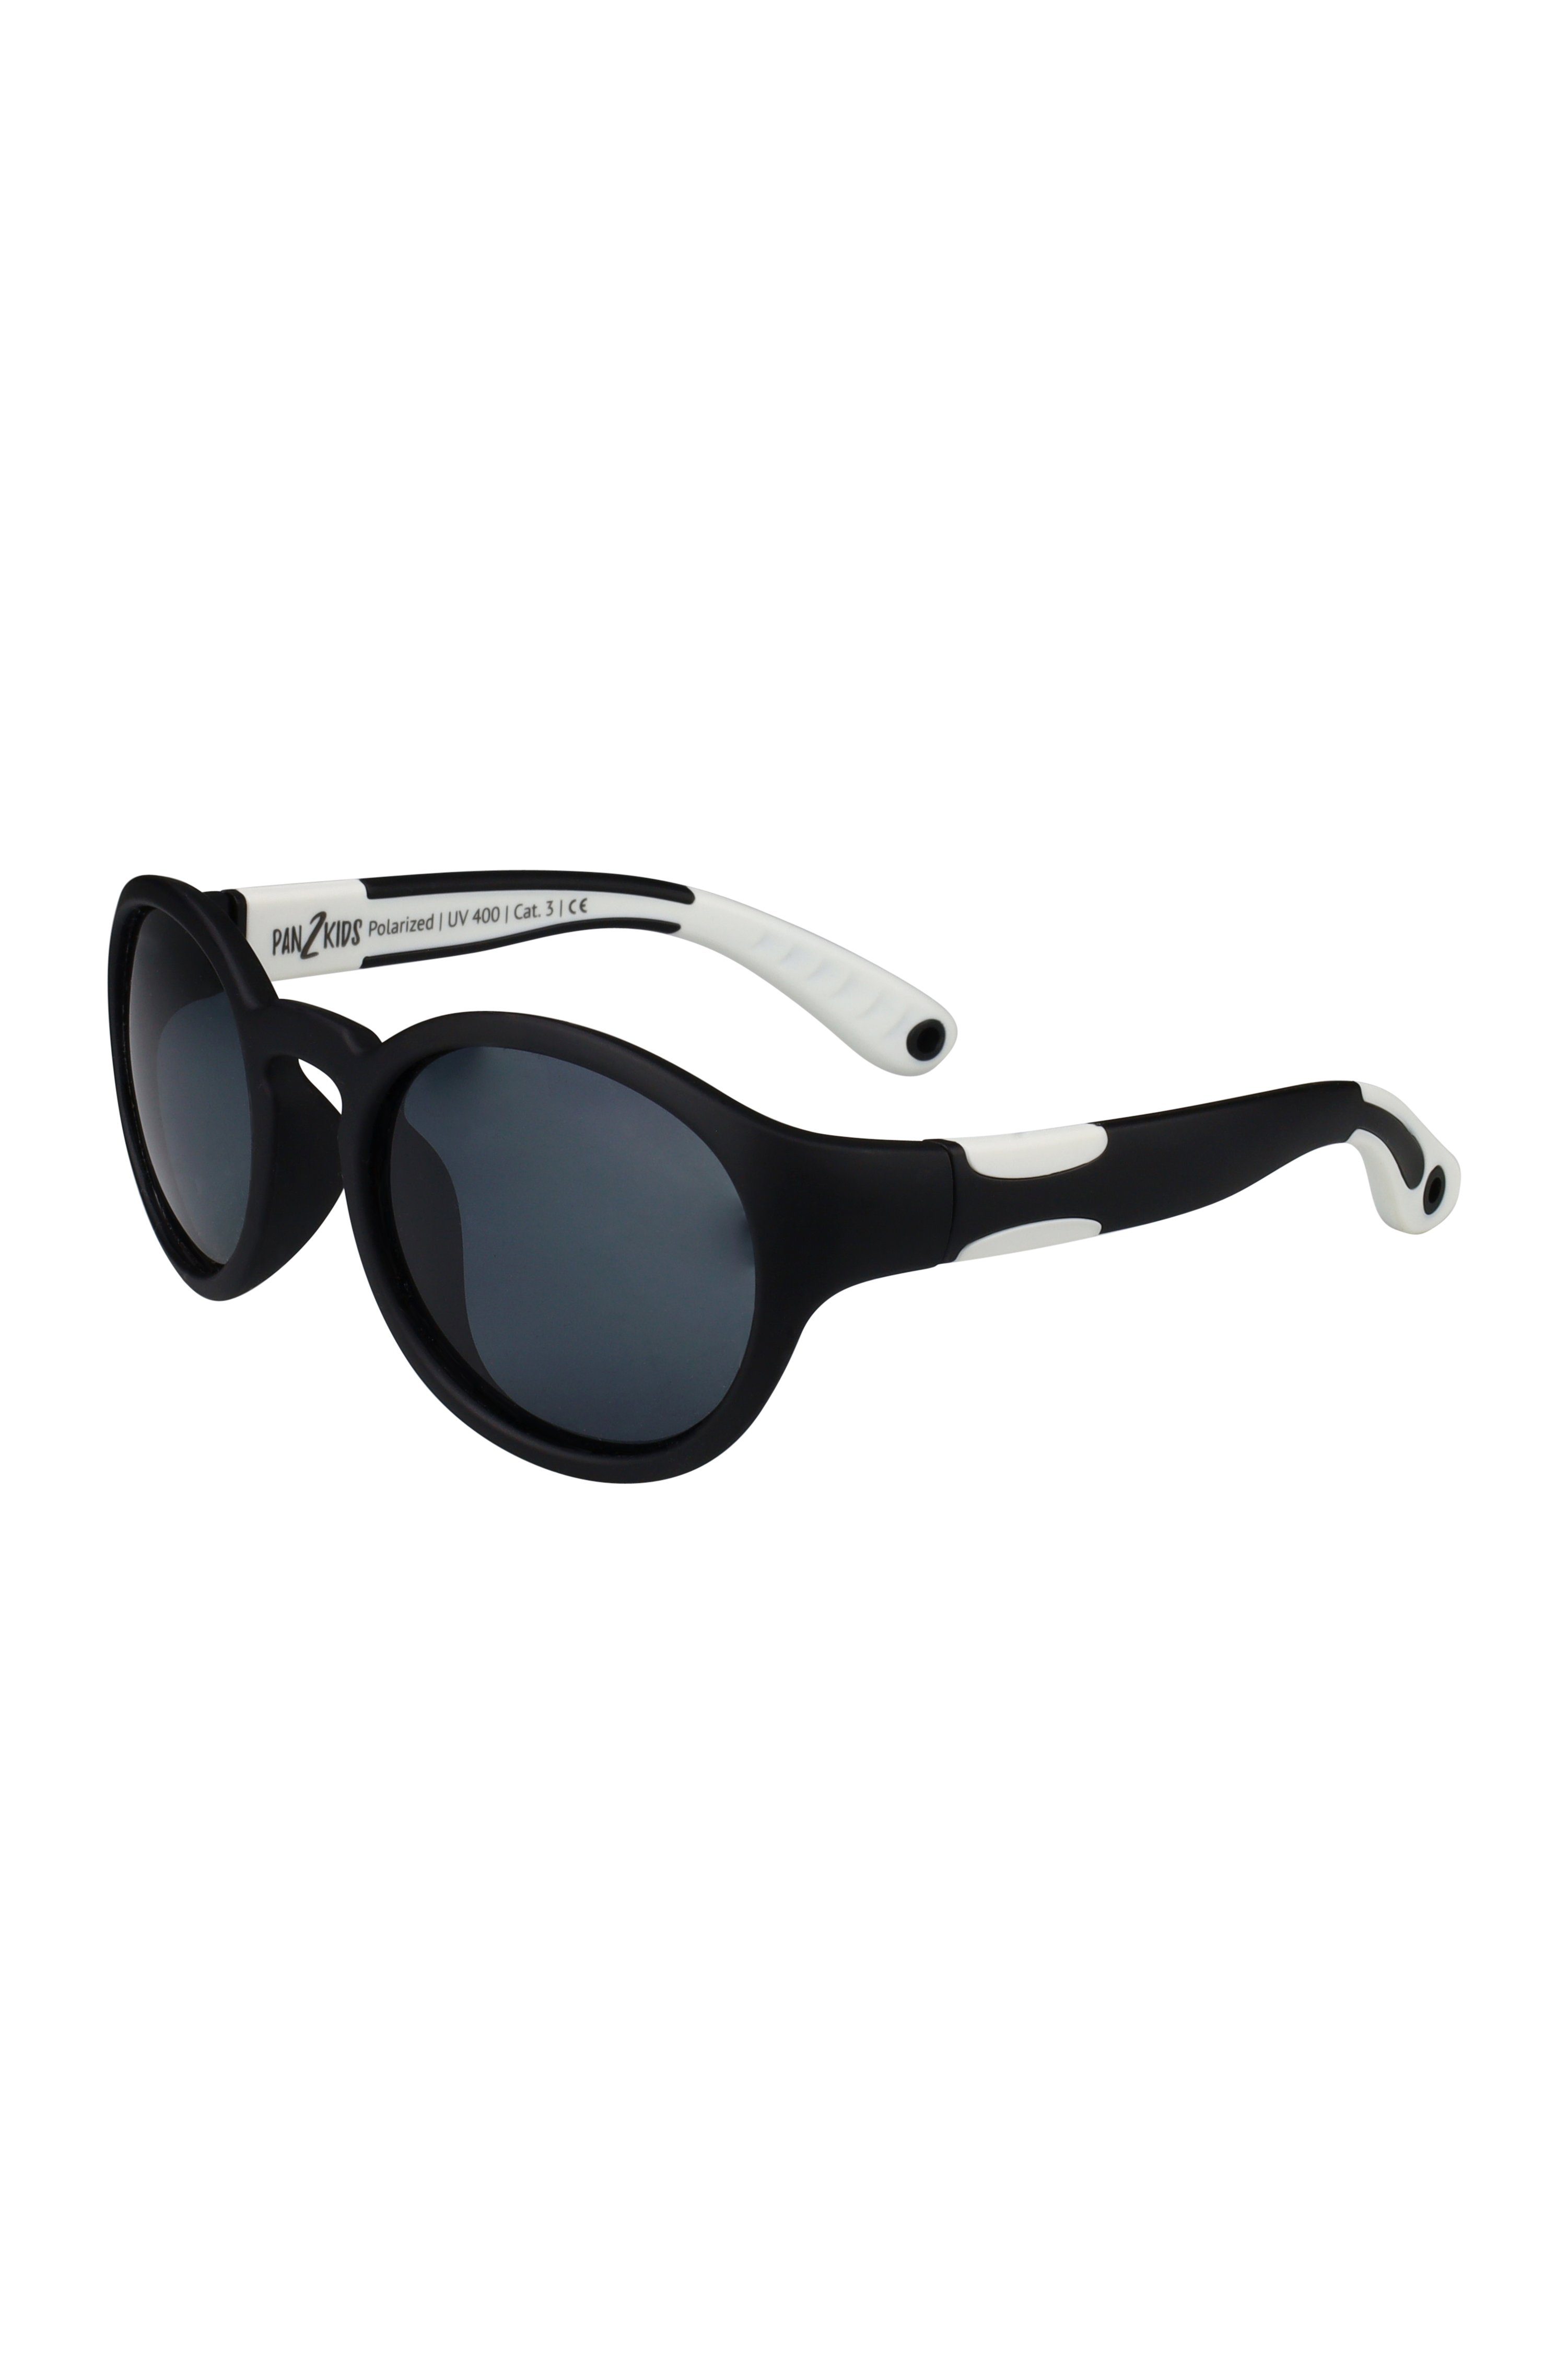 ActiveSol SUNGLASSES Sonnenbrille für Kinder - Pan2Kids, Panto Design, 2 – 5 Jahre, polarisiert Black and White | Kindersonnenbrillen